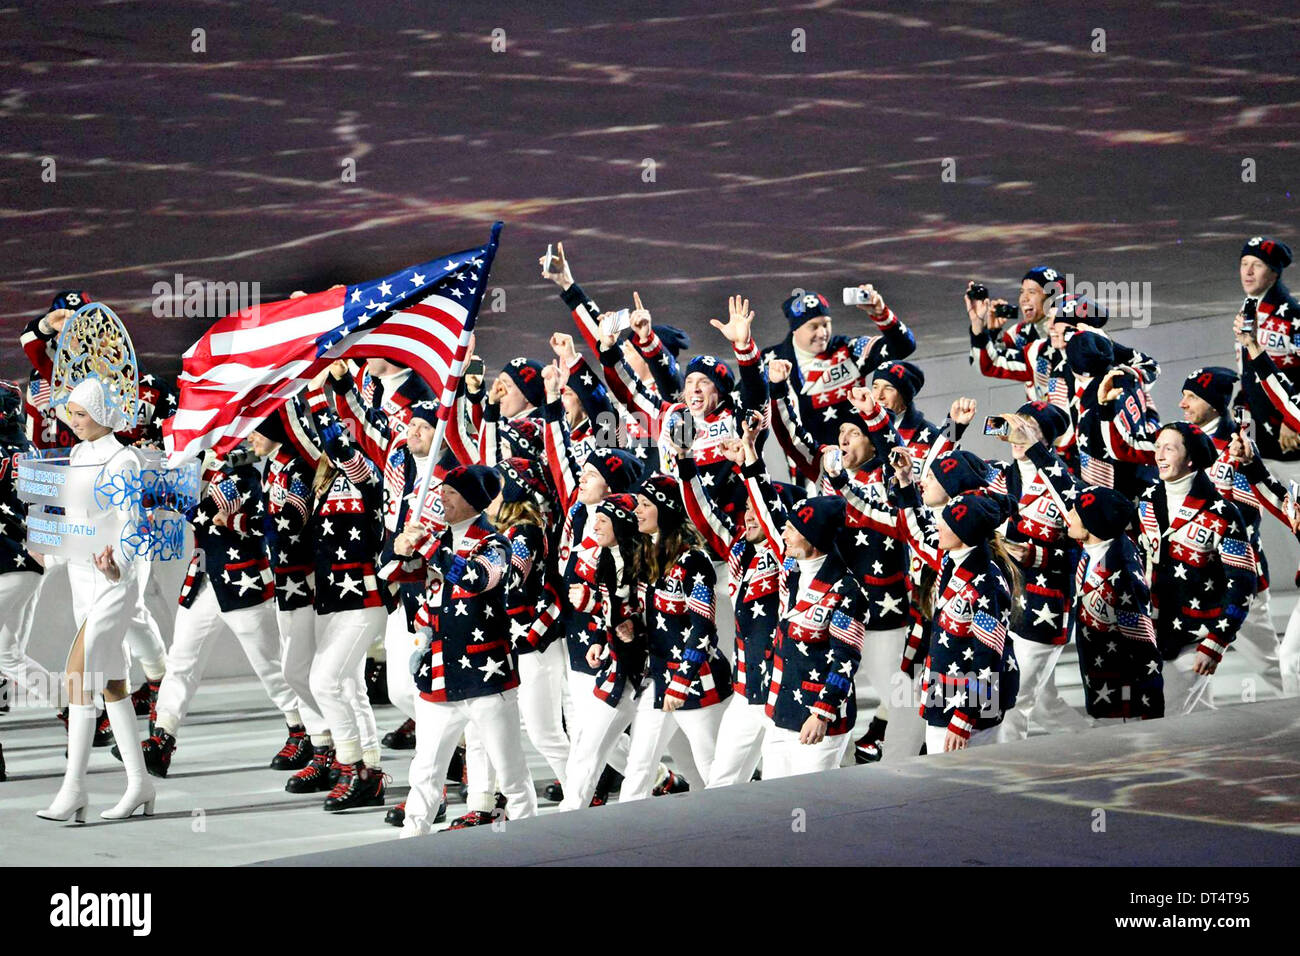 Nosotros equipo Olímpico de invierno marchas en el Fisht Estadio Olímpico durante la ceremonia de apertura de los Juegos Olímpicos de Invierno de 2014 de Sochi en el Parque Olímpico, el 7 de febrero de 2014 en Sochi, Rusia. Foto de stock